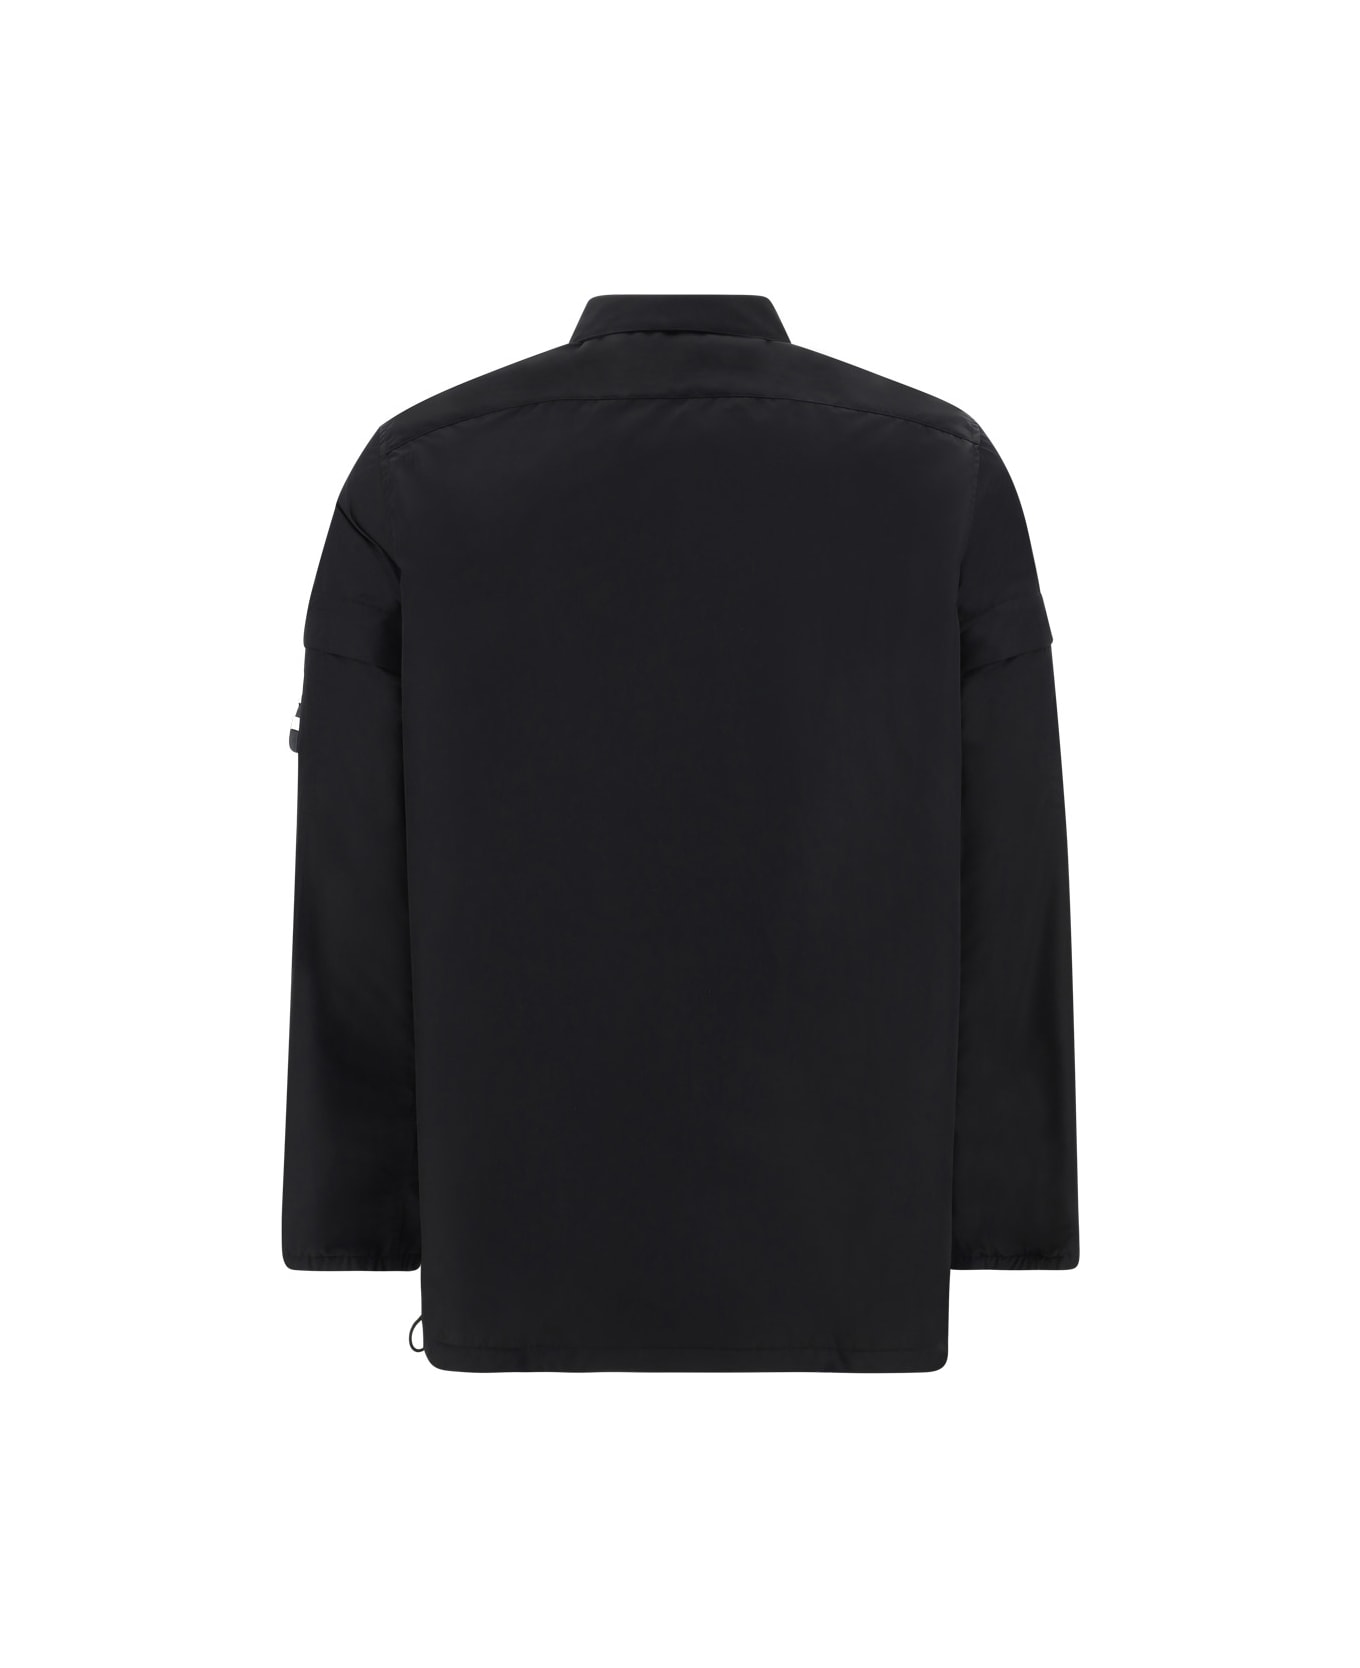 Givenchy Boxy Jacket - black シャツ